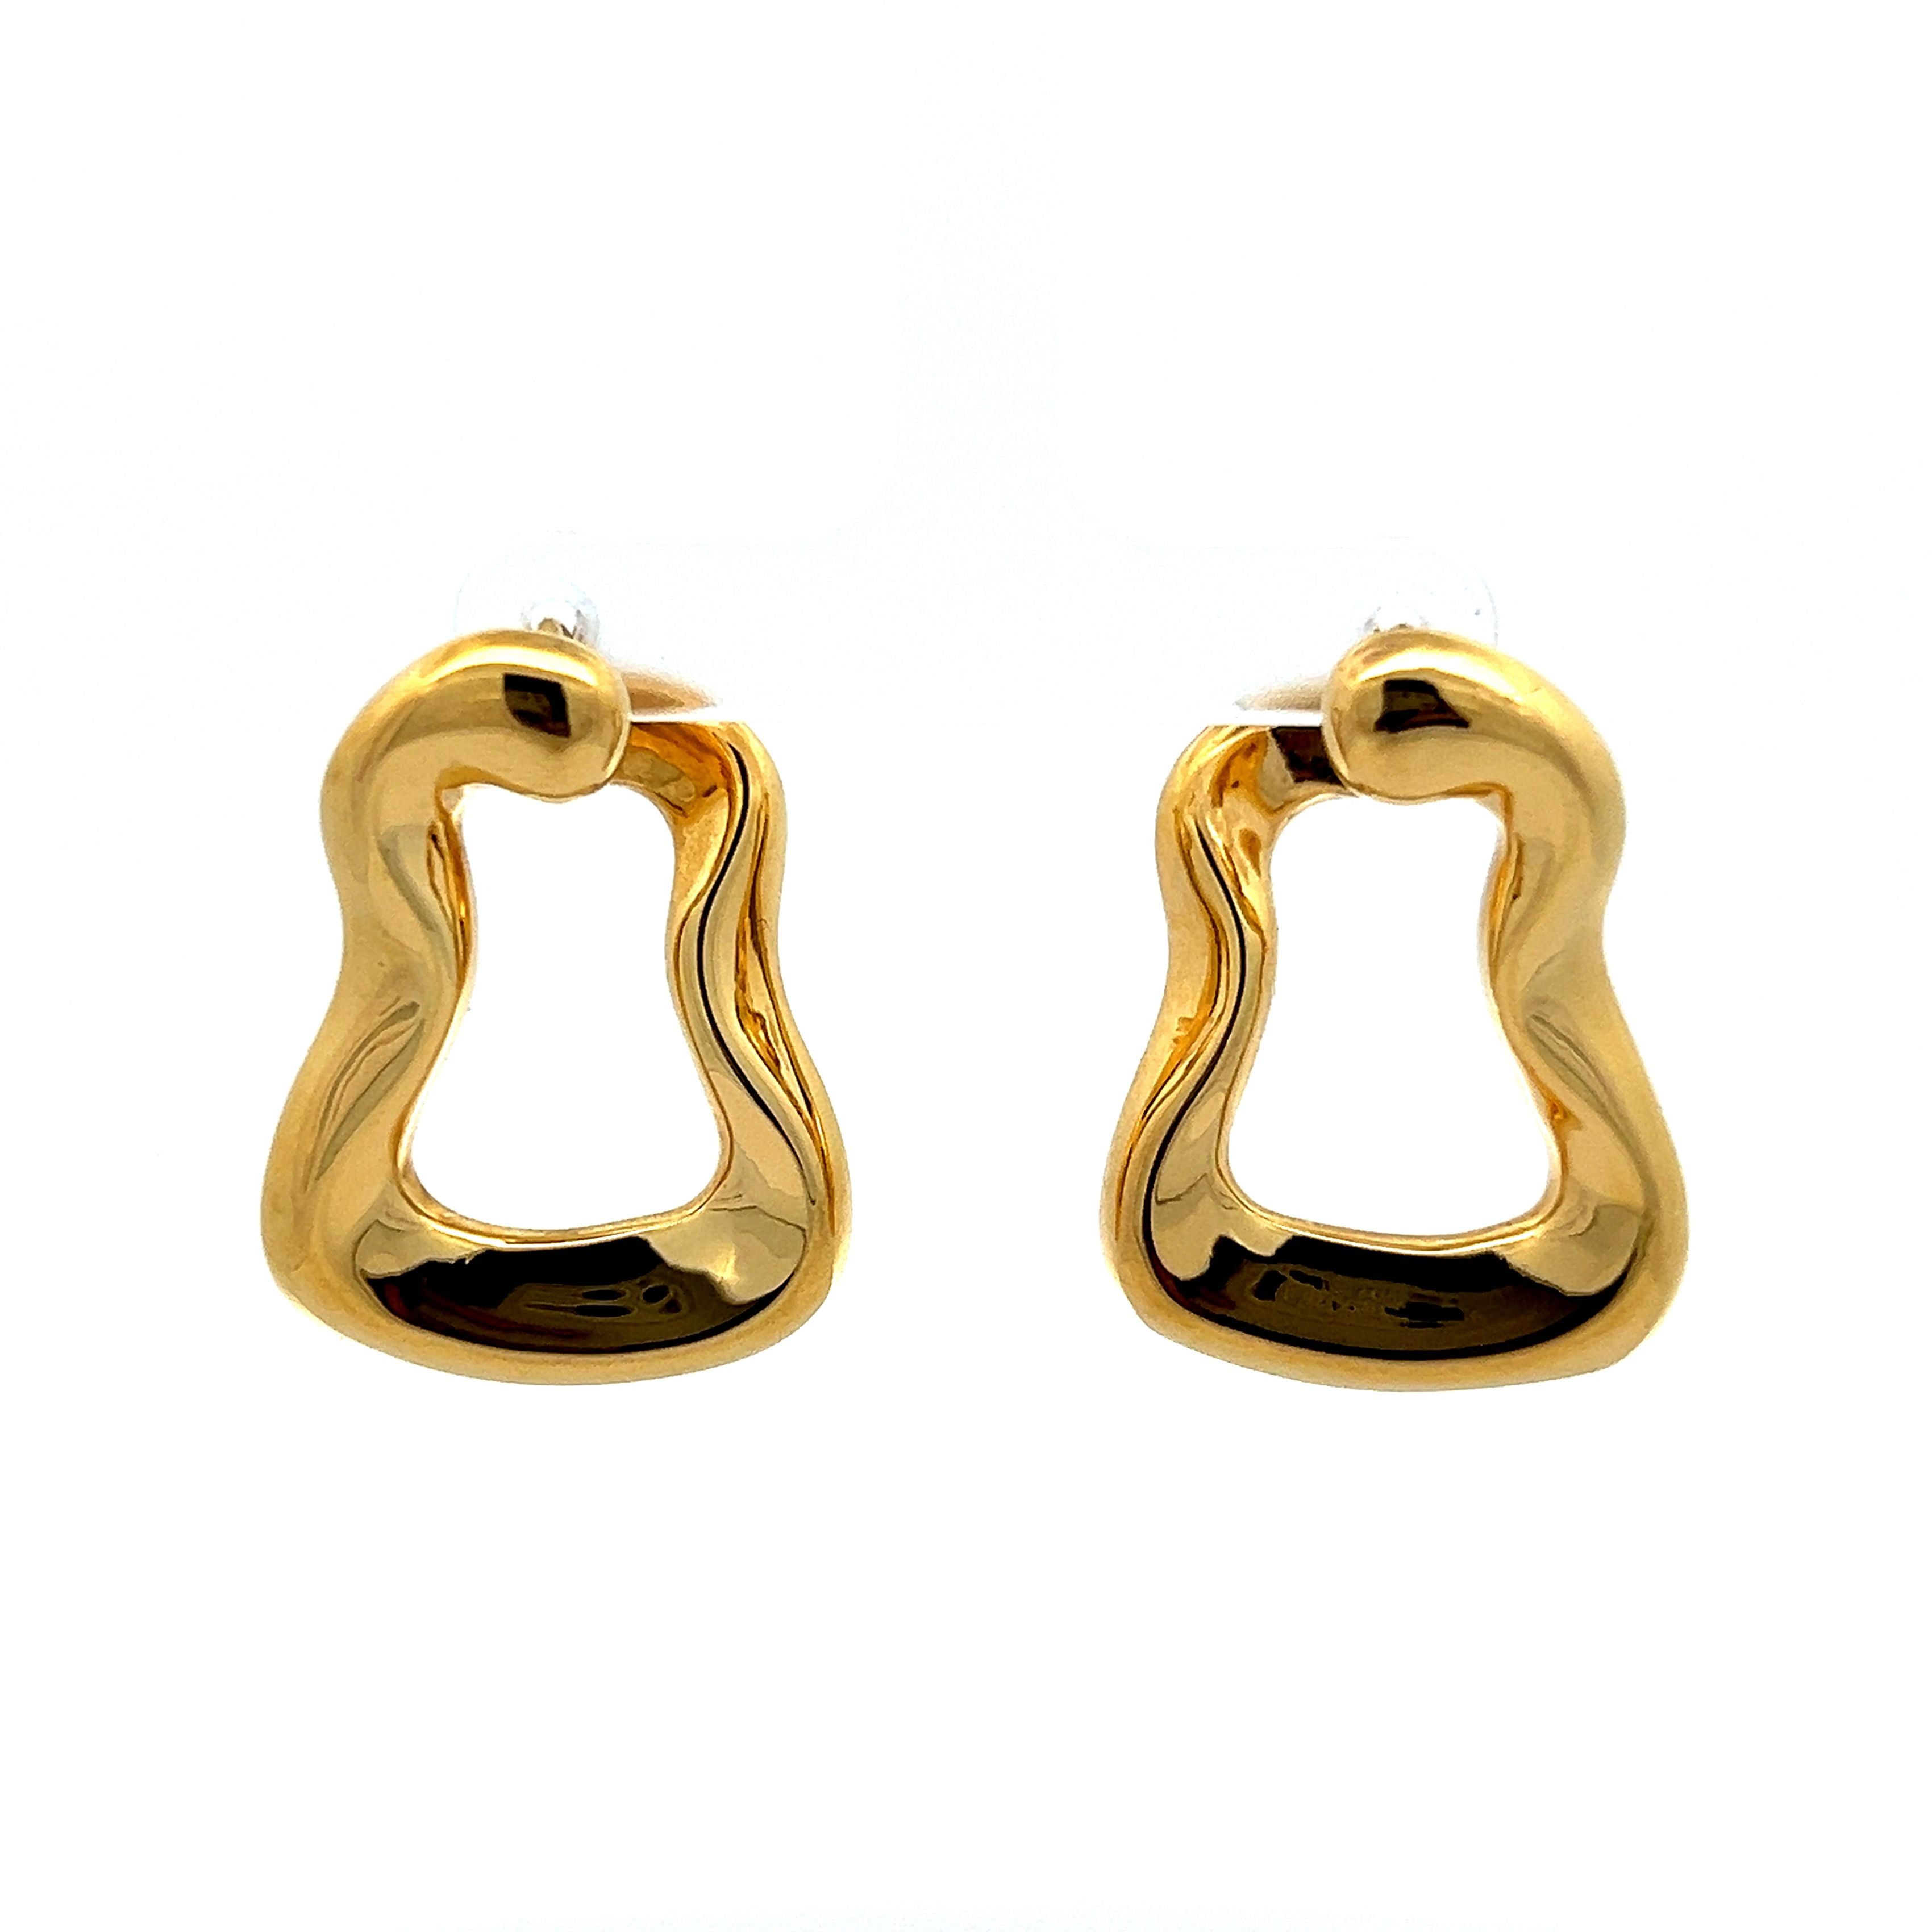 Modern Door Knocker Earrings in 14k Yellow Gold